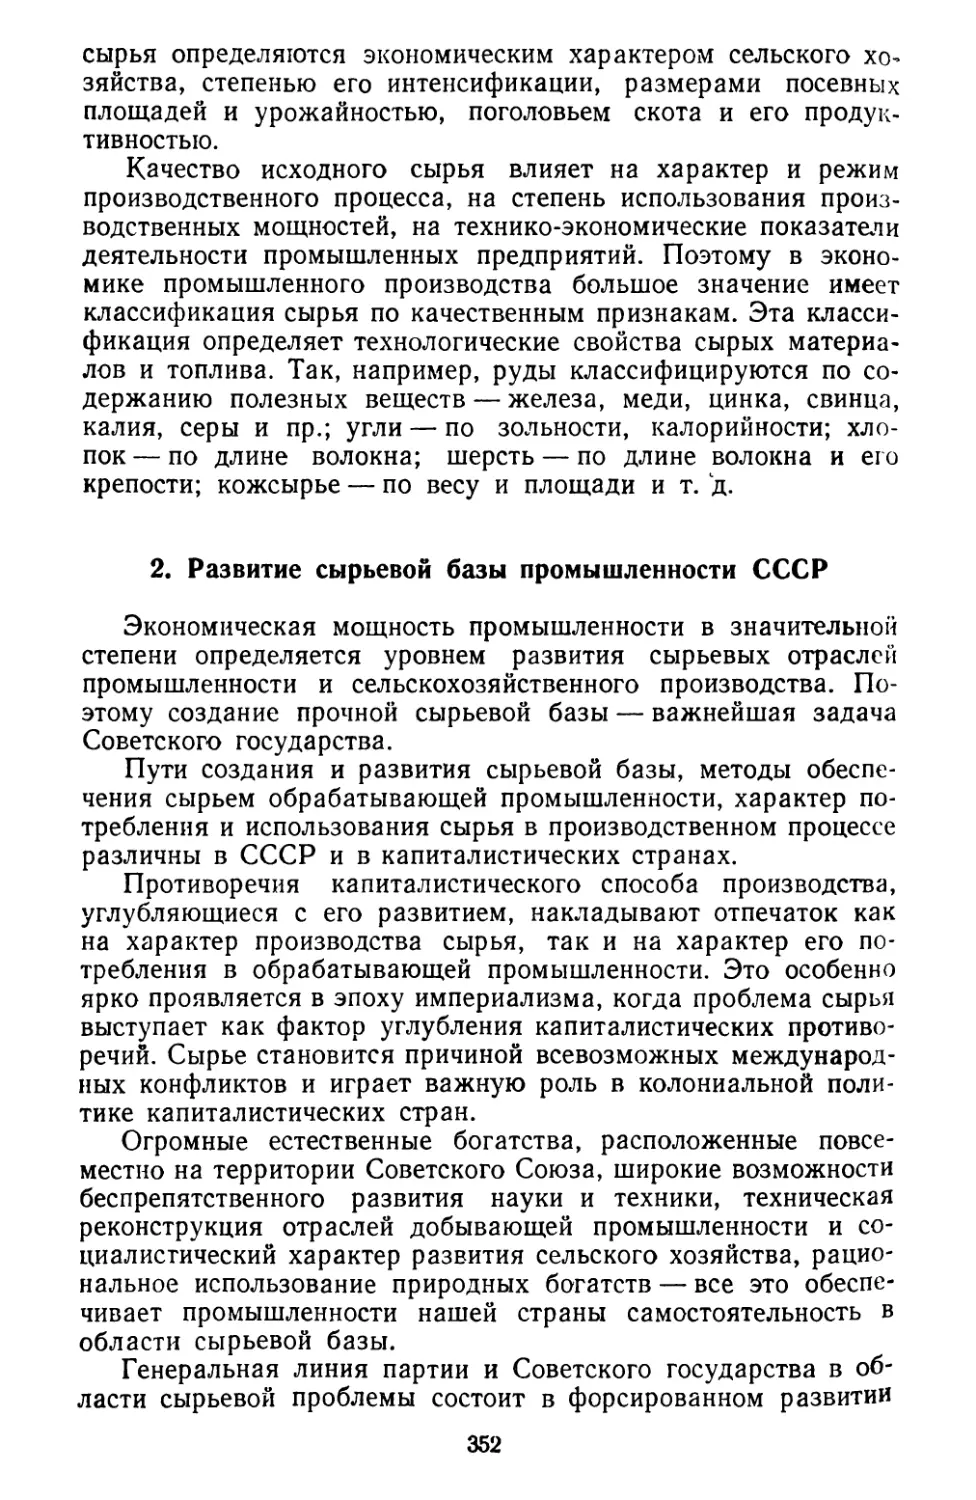 2. Развитие сырьевой базы промышленности СССР